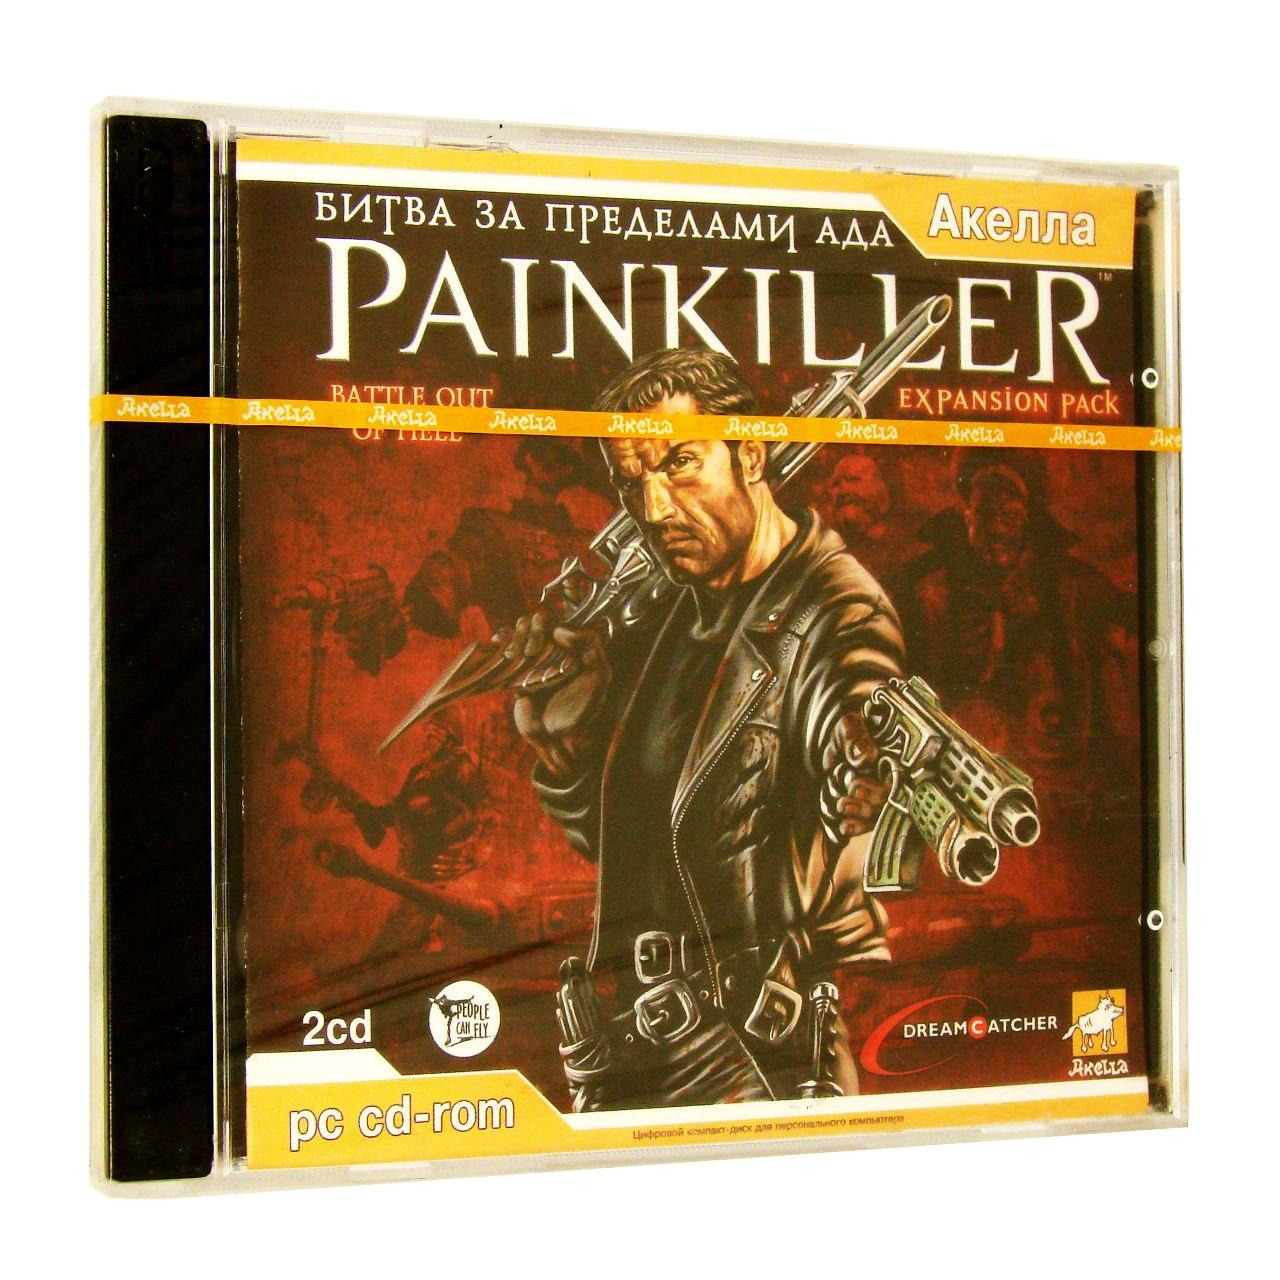  - Painkiller :     () (),  "", 2CD